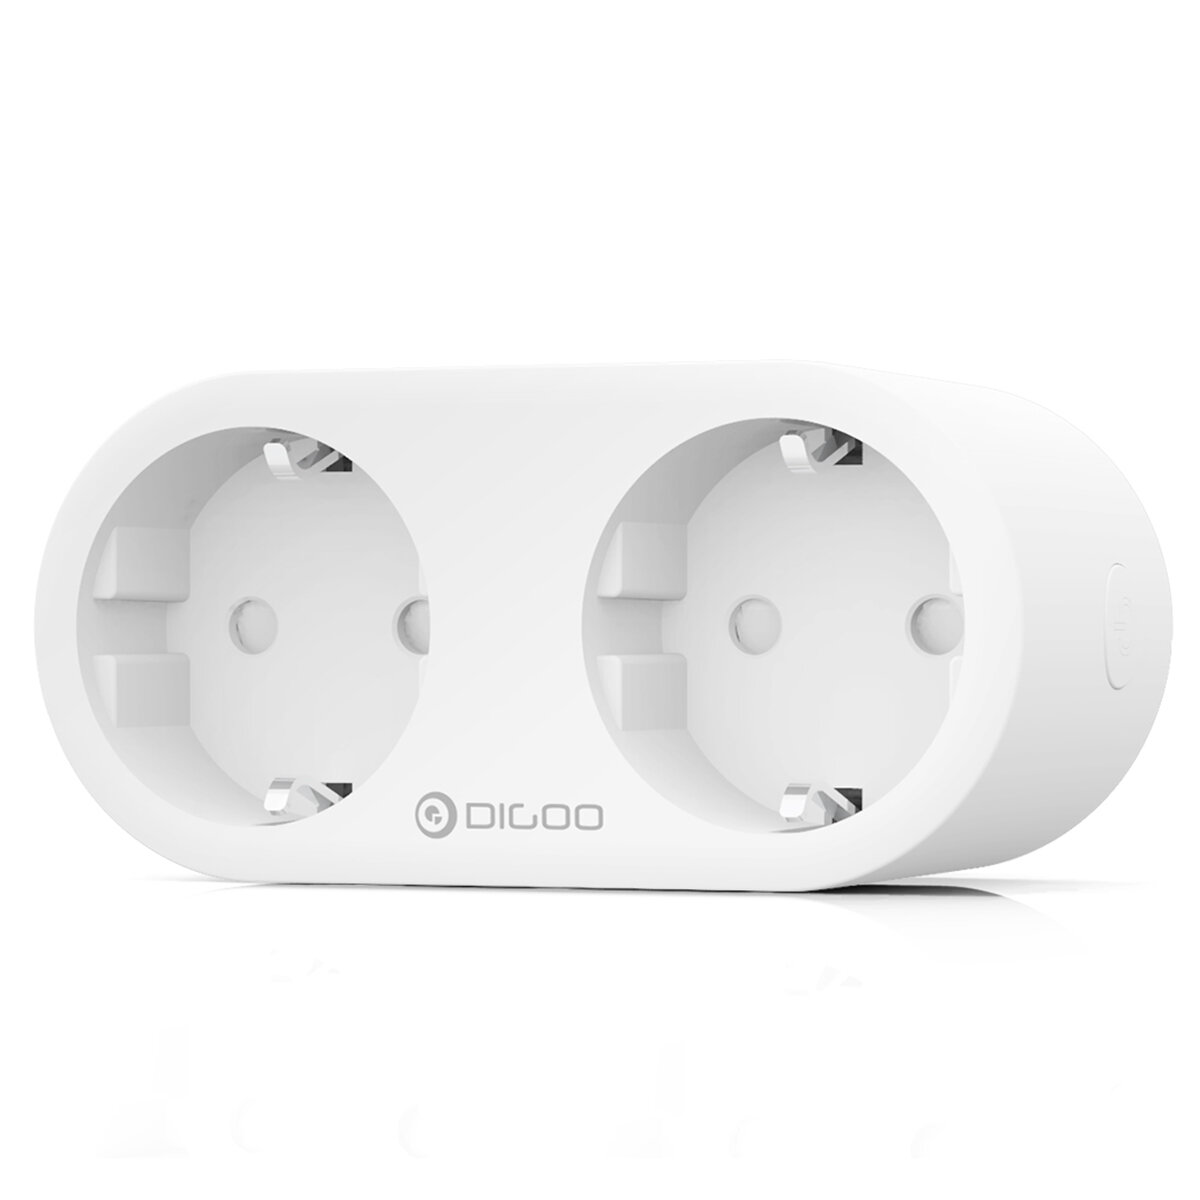 Smart plug DIGOO DG-SP202 za $13.17 / ~50zł